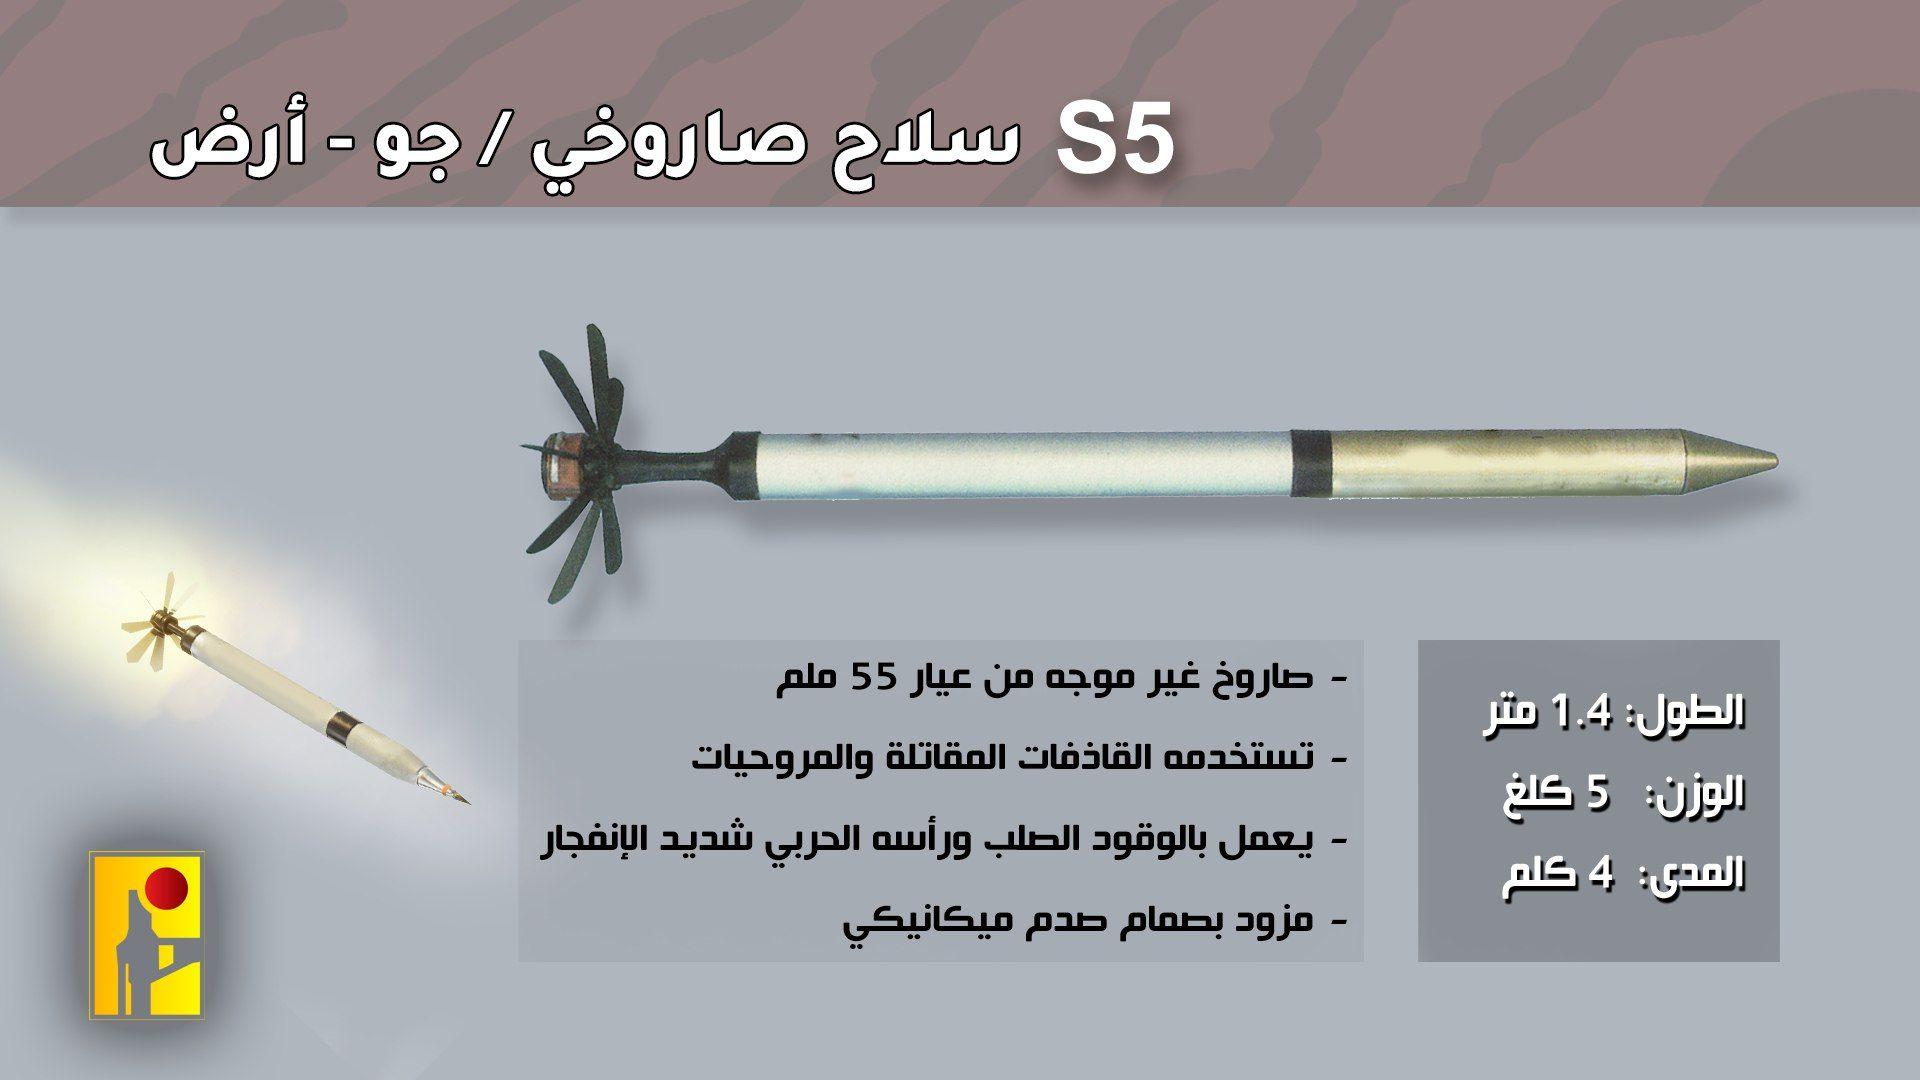 صورة توضيحية لصاروخ S5 التابع لحزب الله